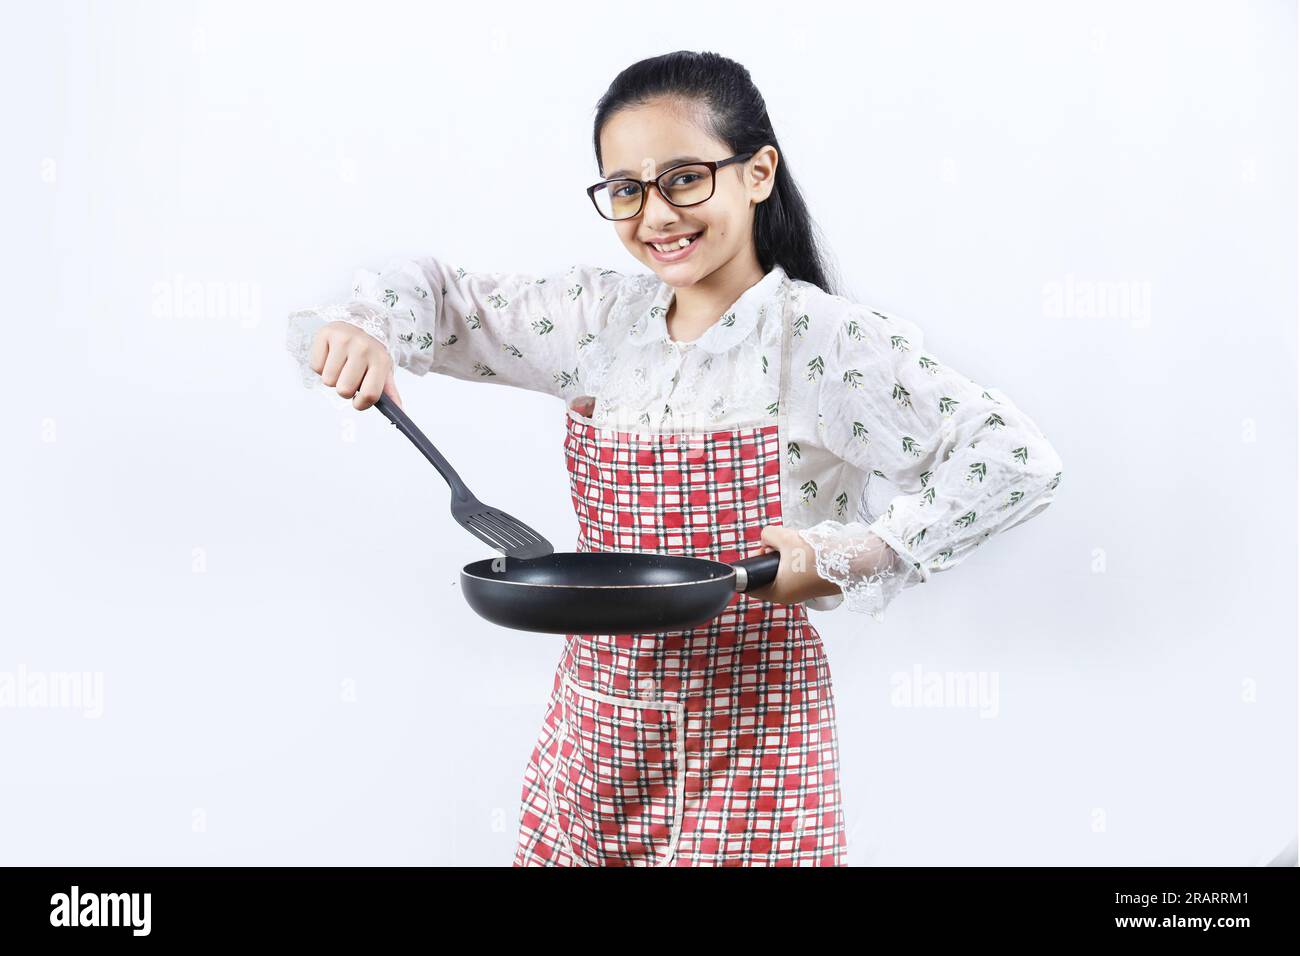 Retrato de la muchacha adolescente india feliz en la cocina que sostiene los accesorios de cocina. Rin enrollable, cuchara de freír, cucharón, sartén. Joven alegre y alegre Foto de stock